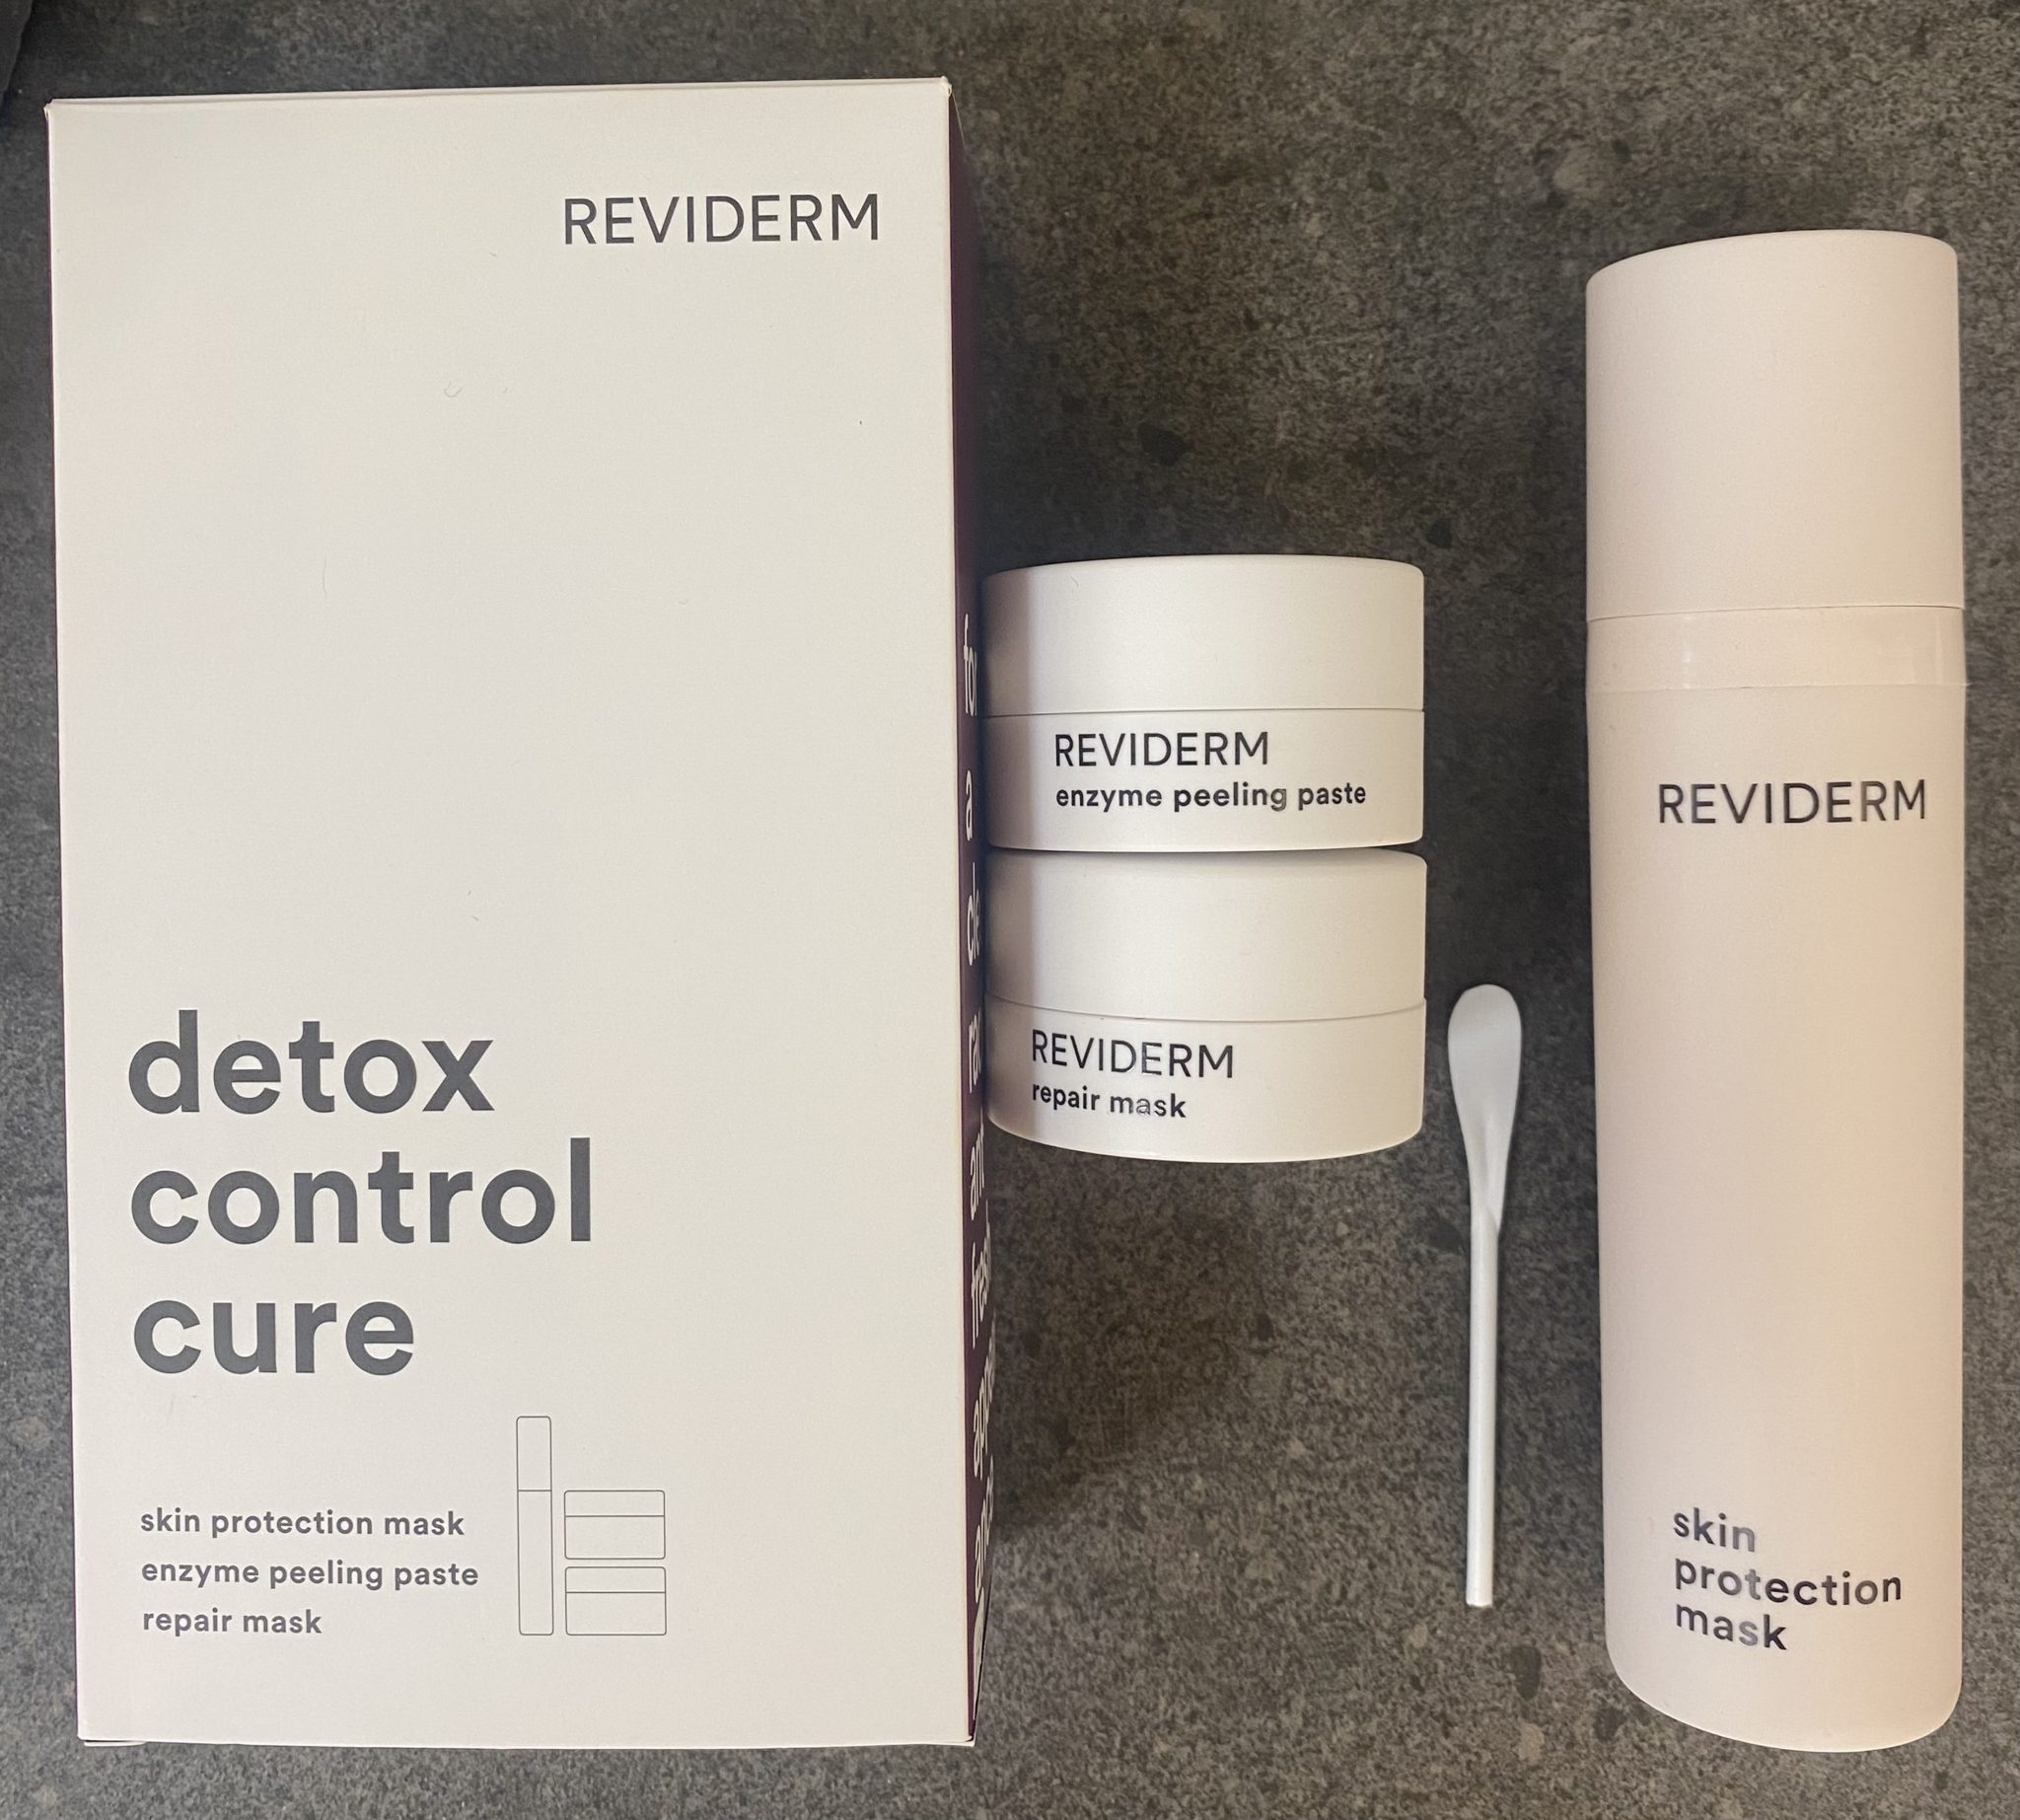 REVIDERM detox control cure | detox set